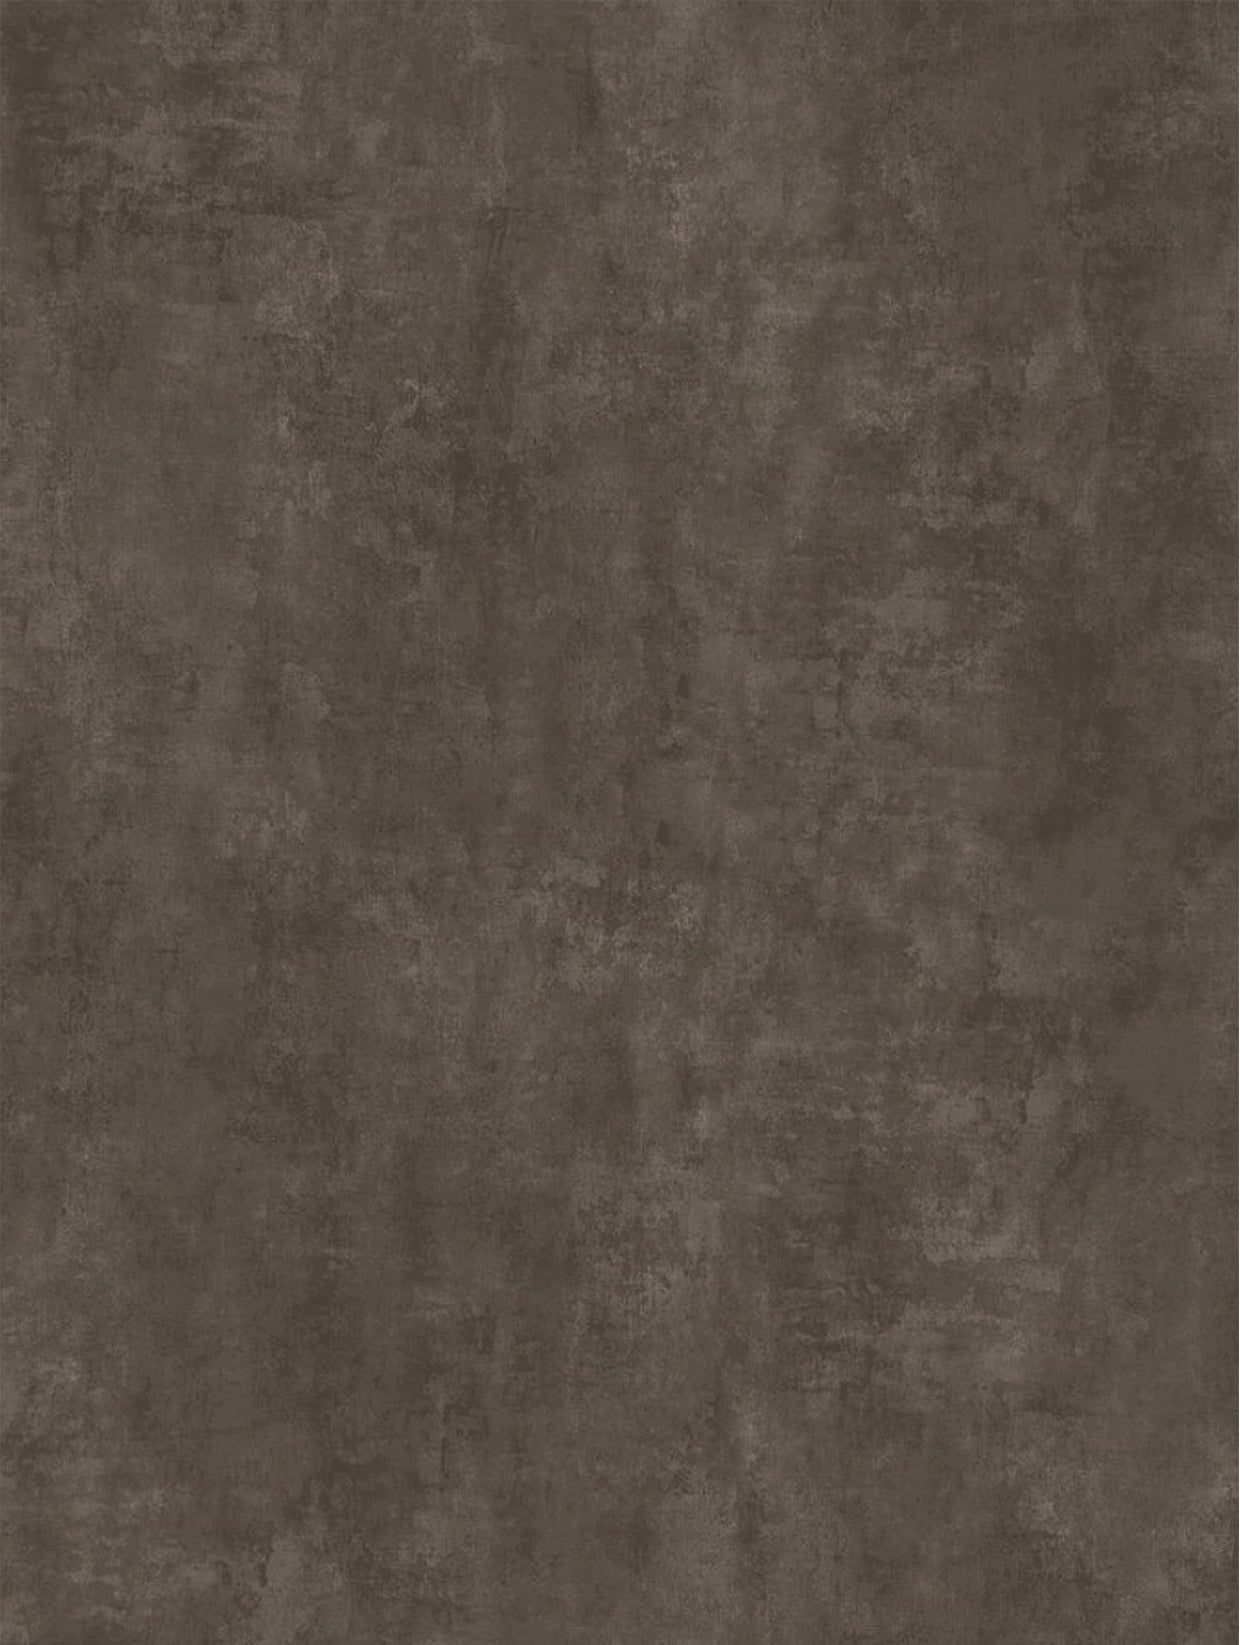 Staal Roest Prestige | Metaal Decor Roest Zachte Meubelfolie Zelfklevend Behang Vinylfolie voor Meubelwandplank (100 x 122 cm)